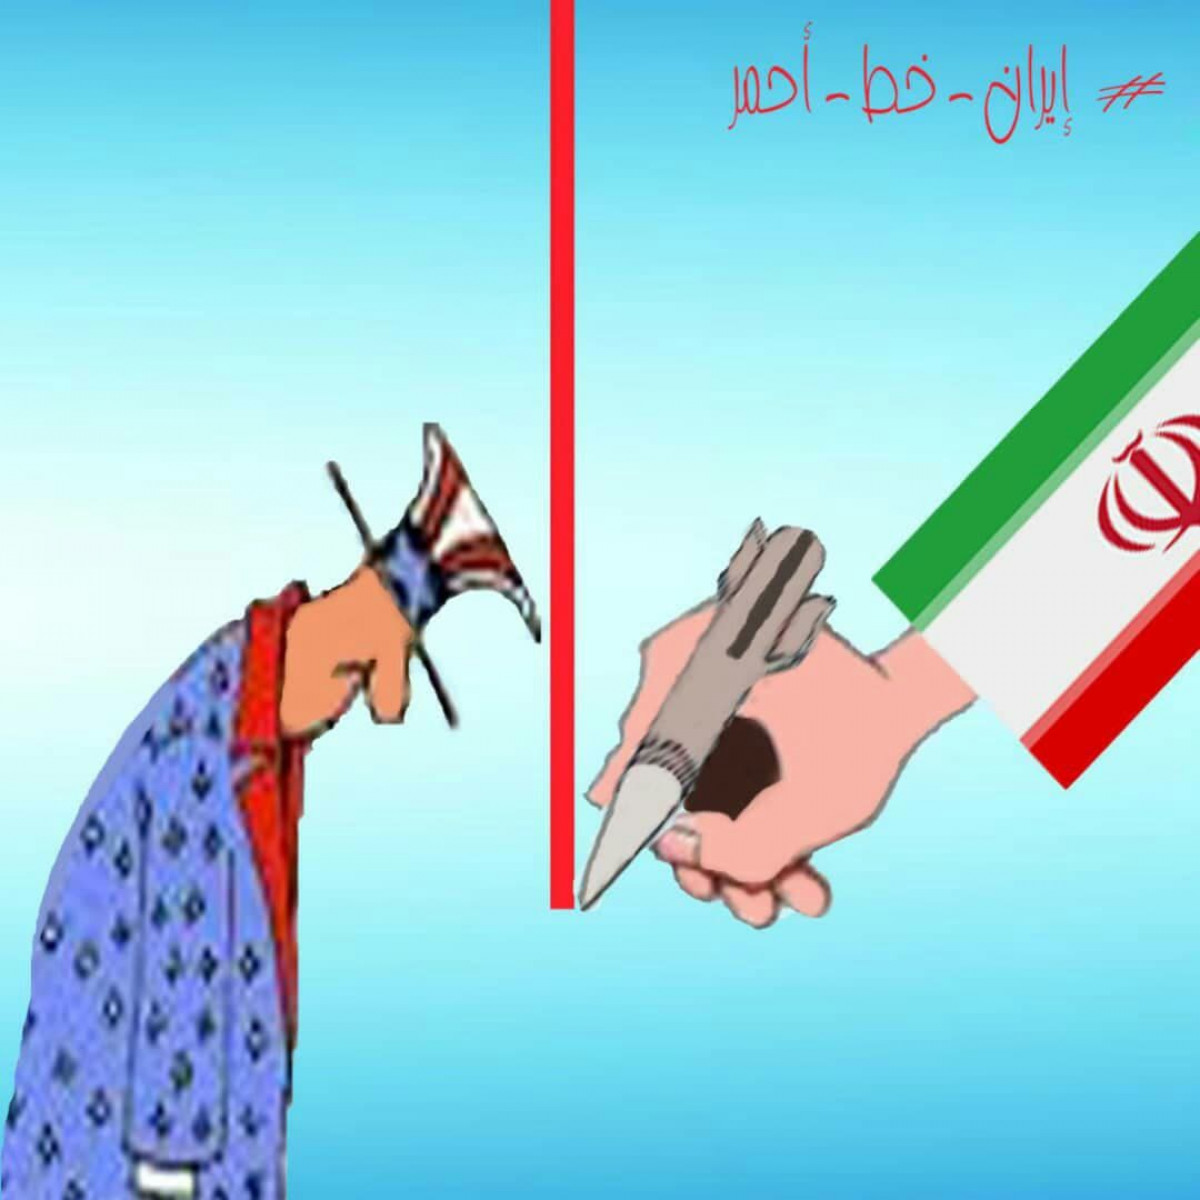 كاريكاتير / إيران خط أحمر